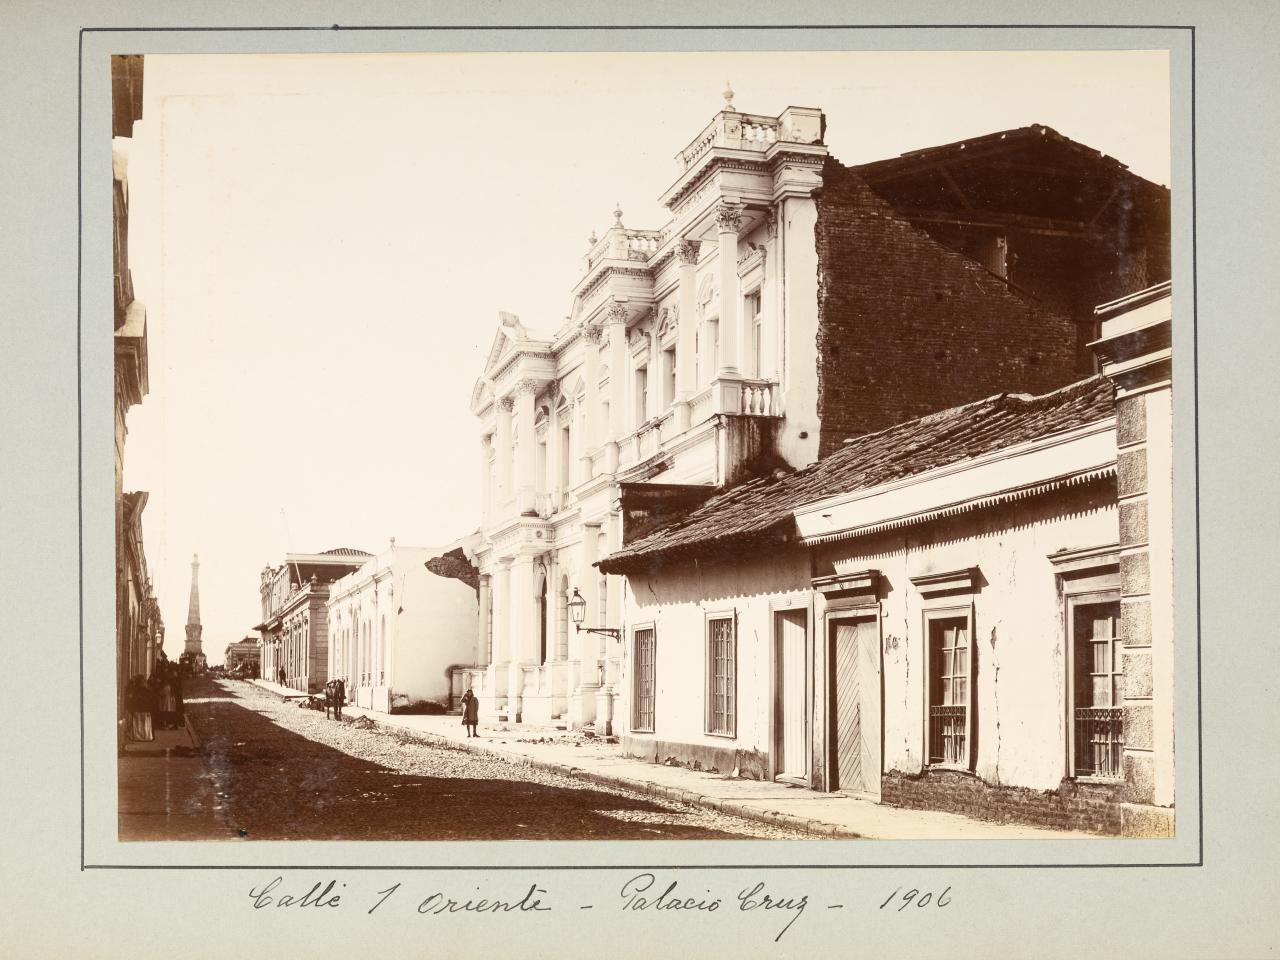 Calle 1 Oriente-Palacio Cruz 1906, 1906